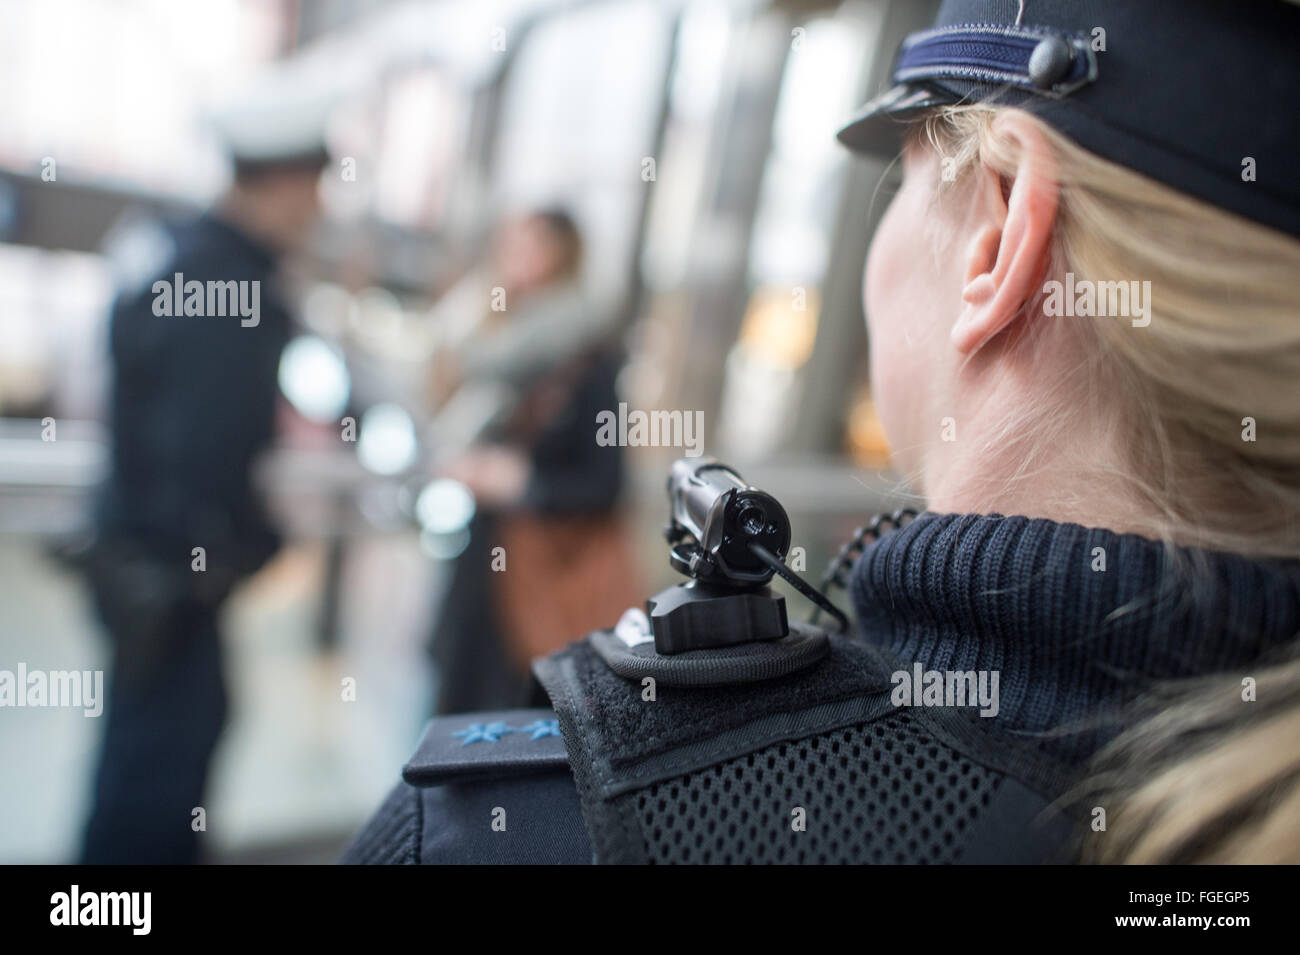 Munich, Allemagne. Feb 19, 2016. Julia S., une policière de la Police fédérale portant un corps mobile appareil photo et un gilet spécial indiquant la surveillance vidéo à la gare centrale de Munich, Allemagne, 19 février 2016. En date d'aujourd'hui, Police fédérale dans les tests de Munich caméras miniatures qui sont rattachées à ces vestes et sera utilisé pendant des situations spécifiques afin d'effrayer des attaquants. PHOTO : MATTHIAS BALK/dpa/Alamy Live News Banque D'Images